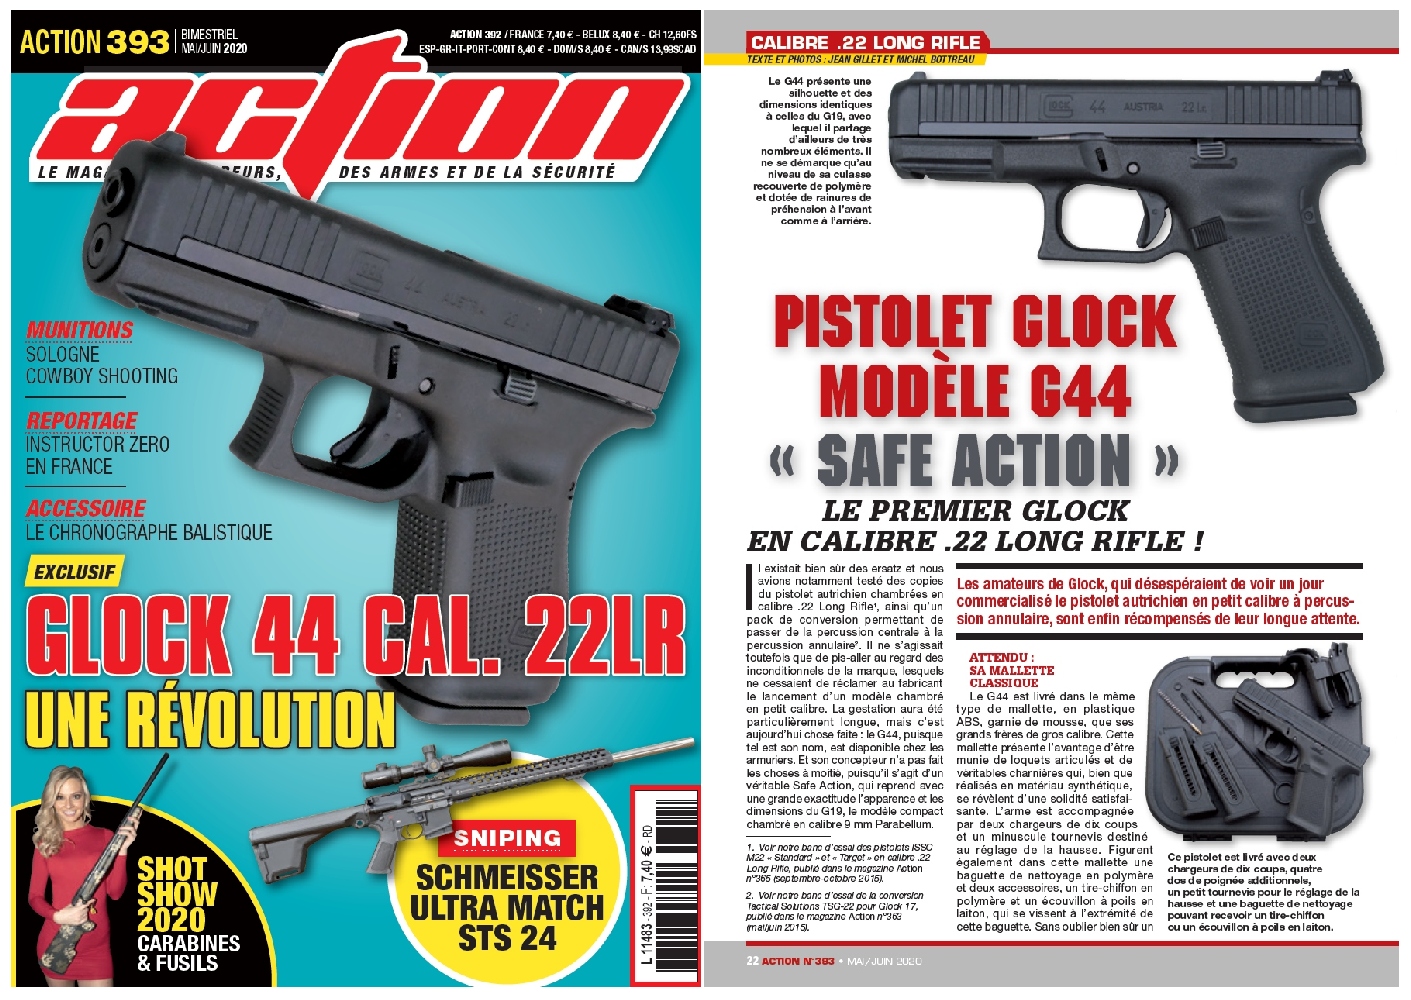 Le banc d’essai du pistolet Glock modèle G44 a été publié sur 6 pages dans le magazine Action n°393 (mai-juin 2020). 